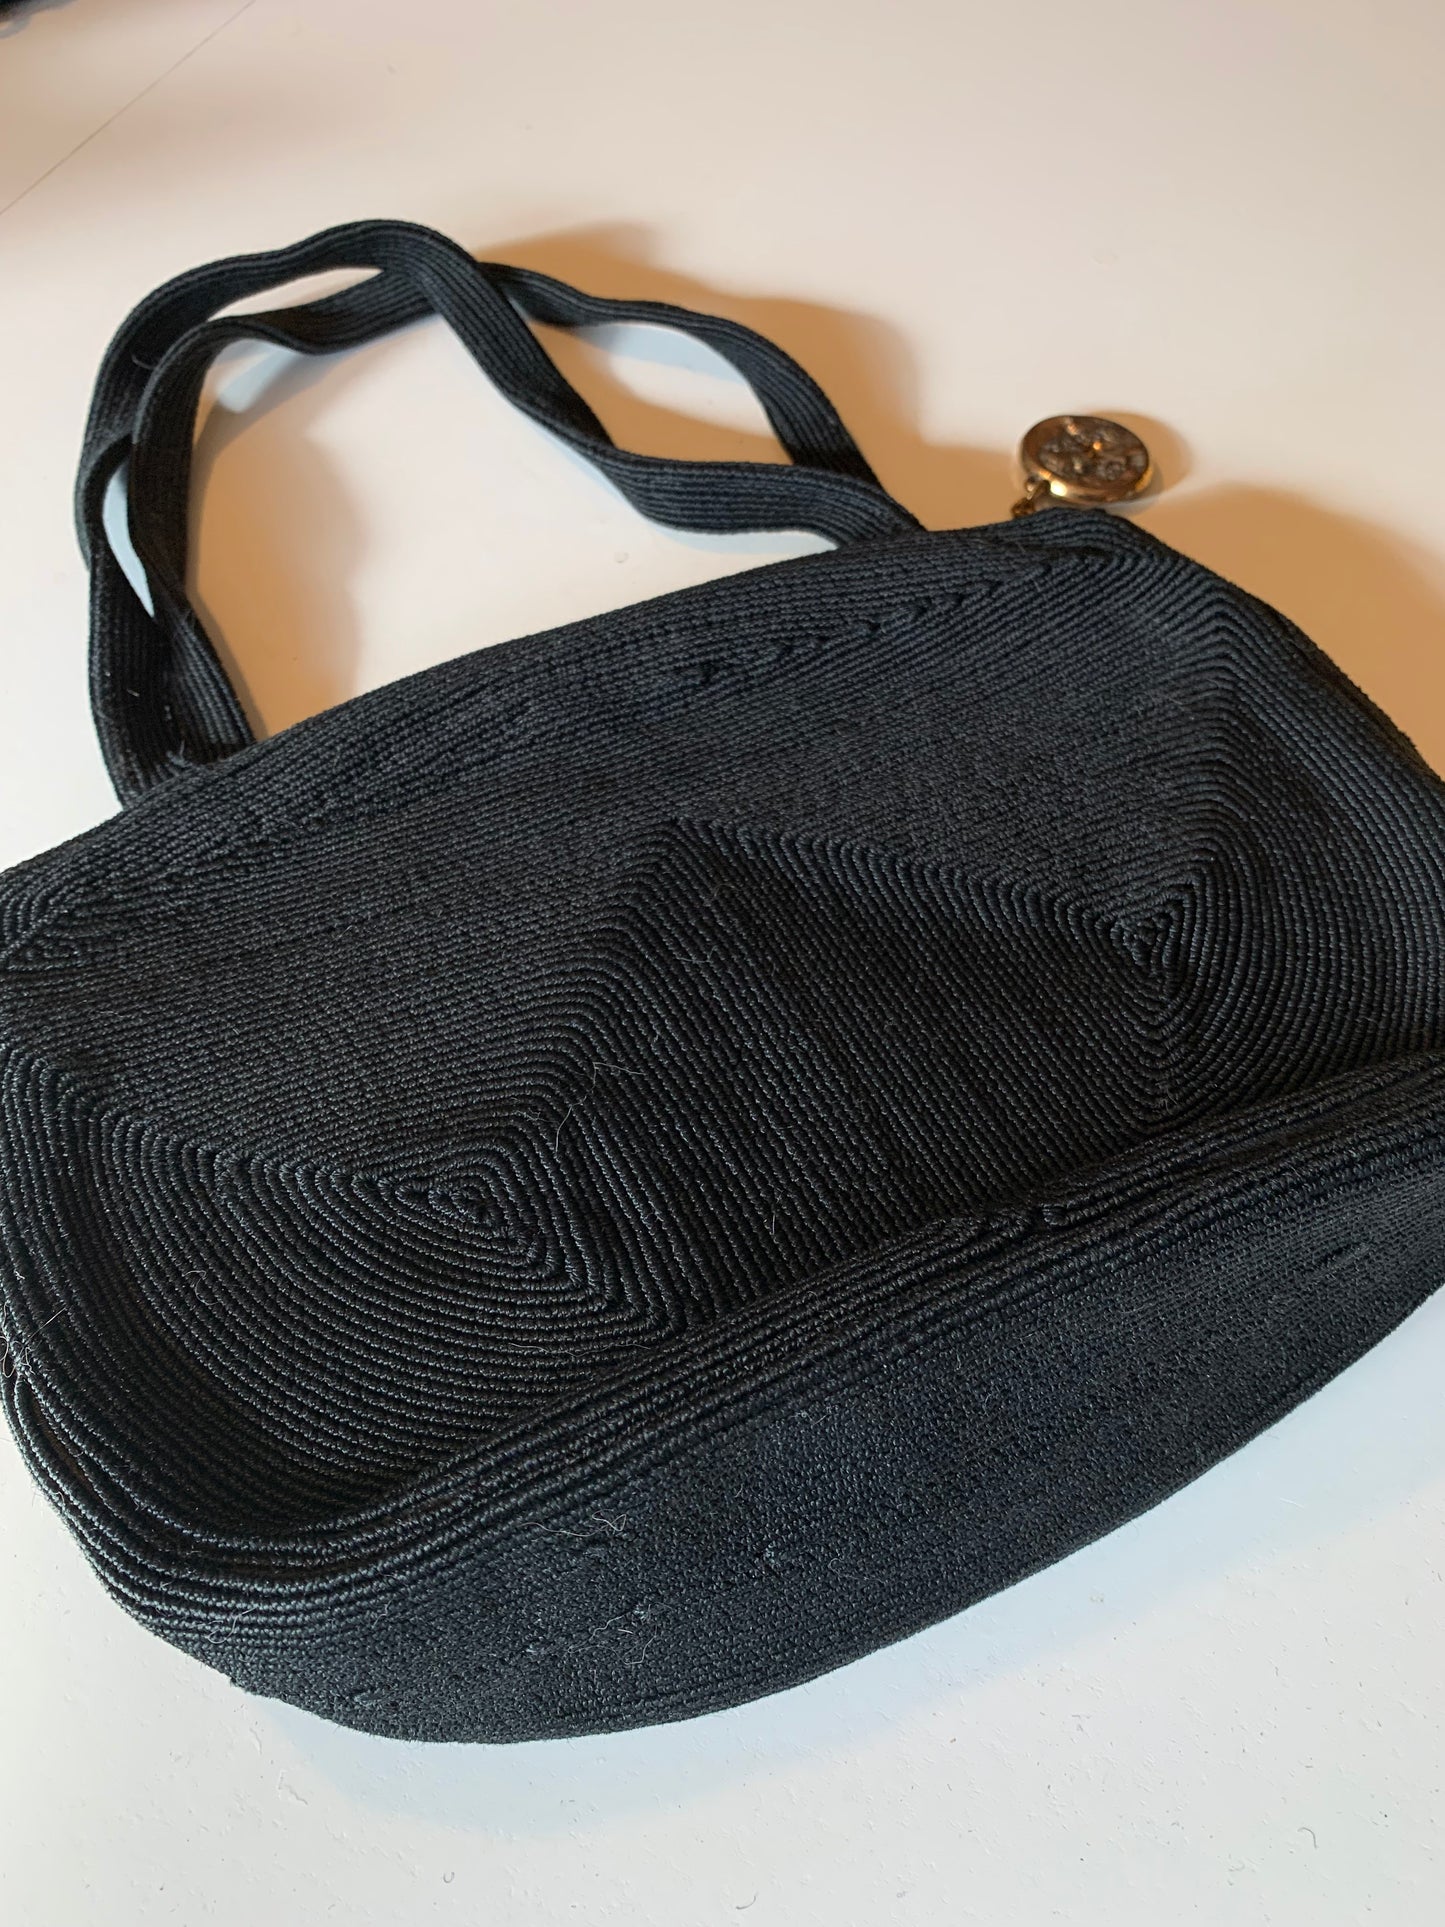 Black Double Handle Cordé Style Handbag with Nouveau Zipper Pull circa 1940s